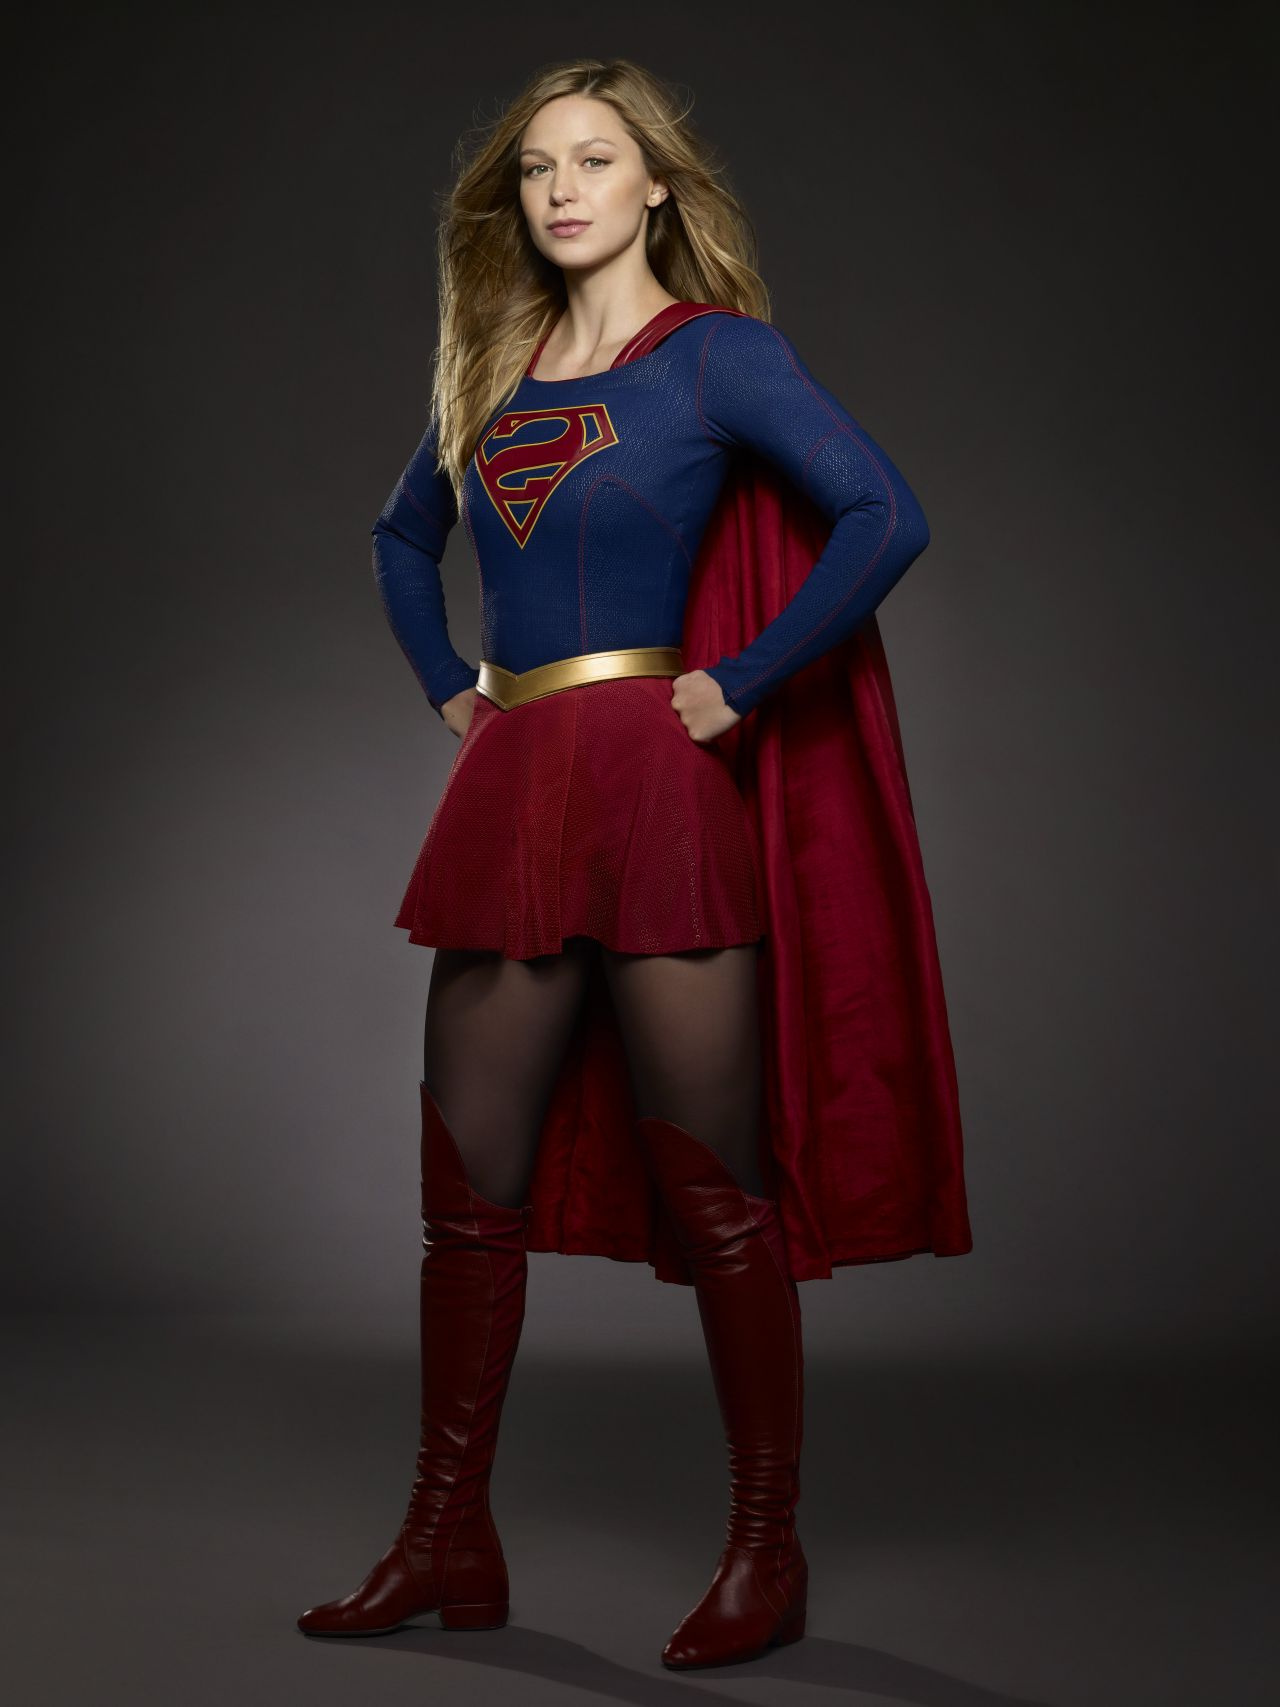 Supergirl Coloriage Inspirant Image Coloriage Supergirl Par Melissa Benoist à Imprimer Et Colorier